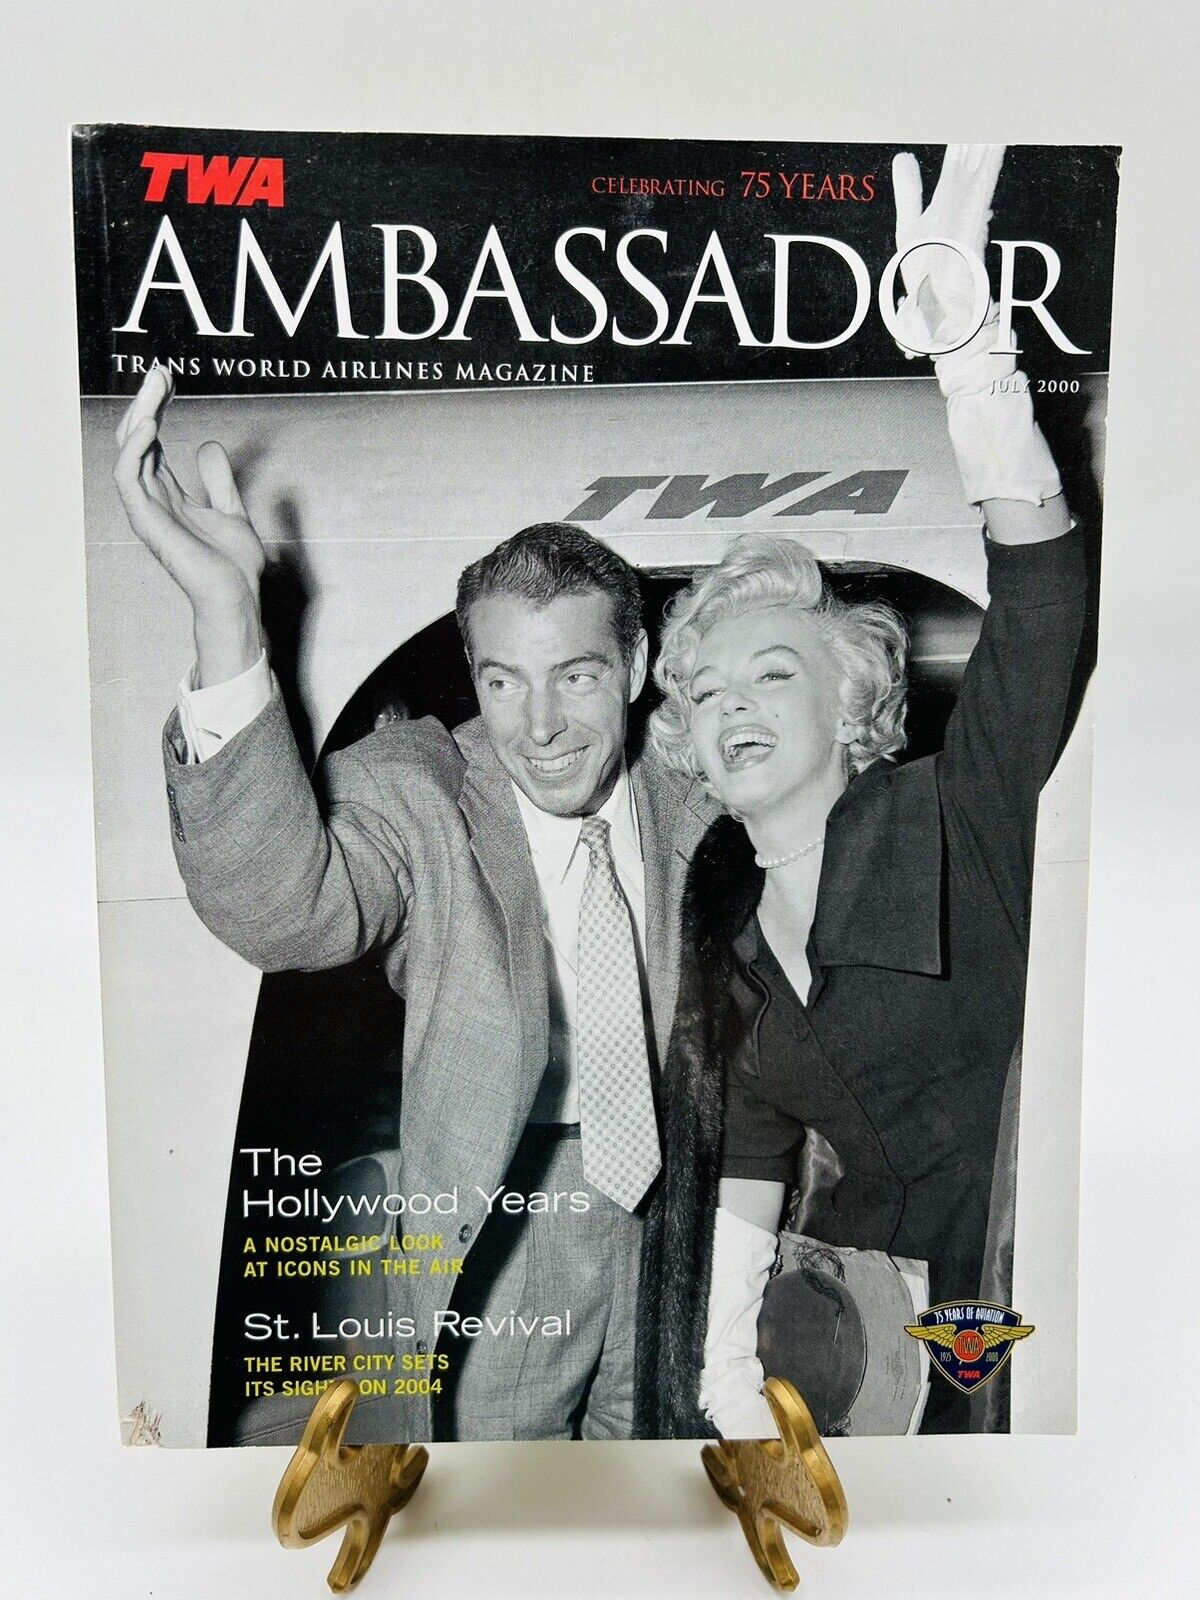 Ambassador Trans World Airlines Magazines July 2000 Celebrating 75 Years